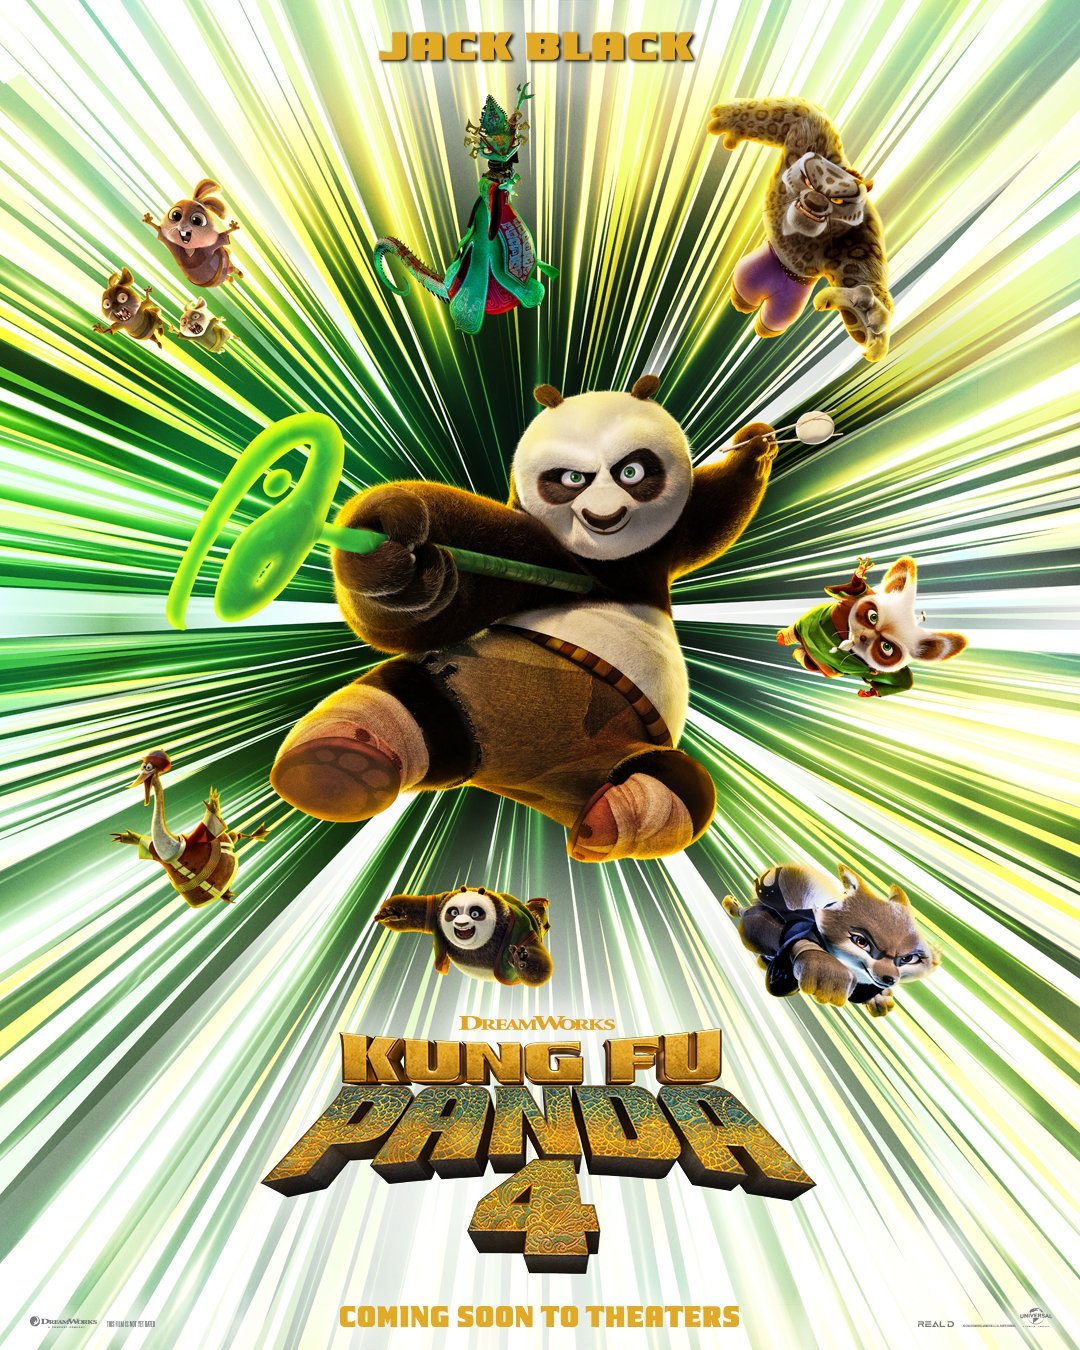 Next Sensory Friendly Showing: Kung Fu Panda 4